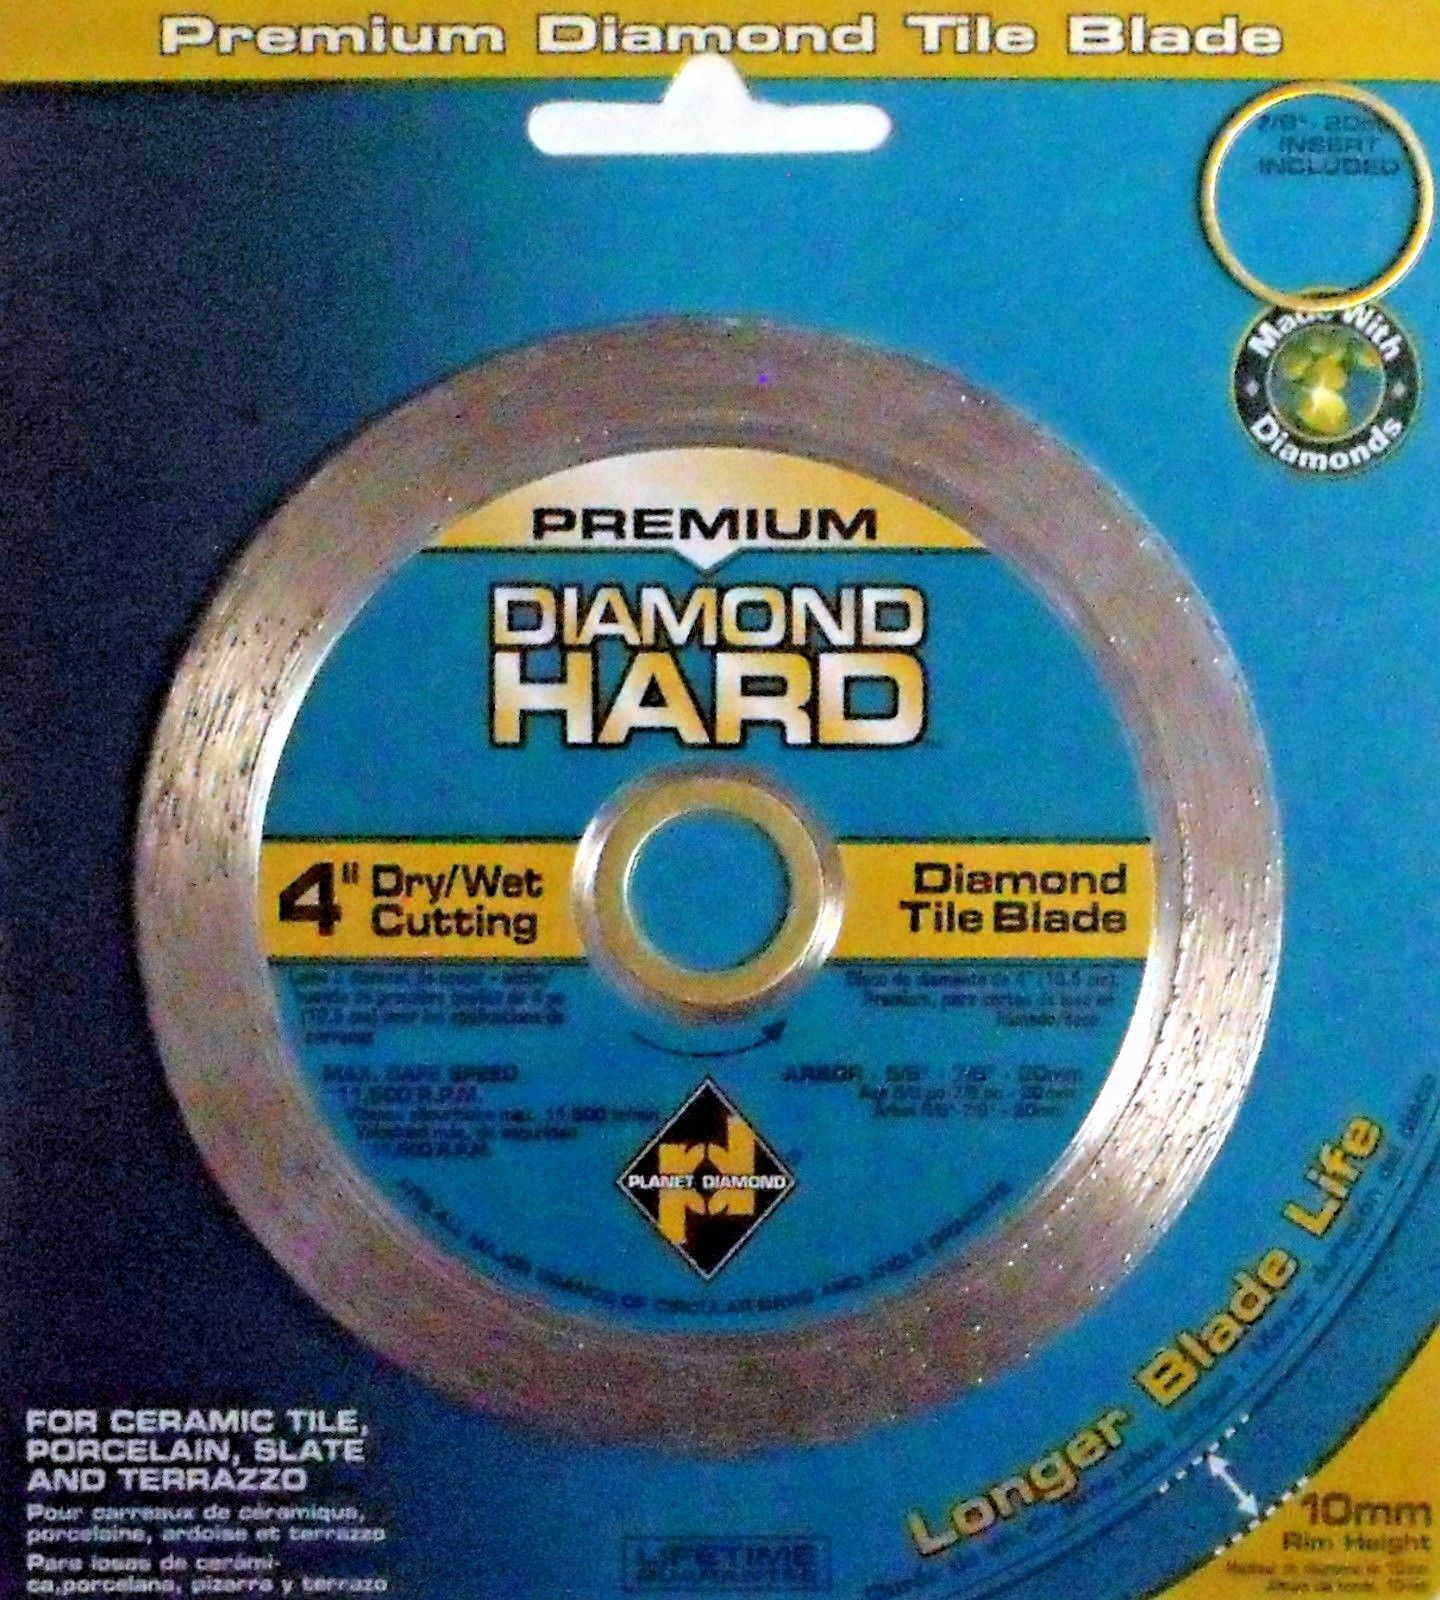 Planet Diamond 22104020 4" Continuous Rim Diamond Saw Blade